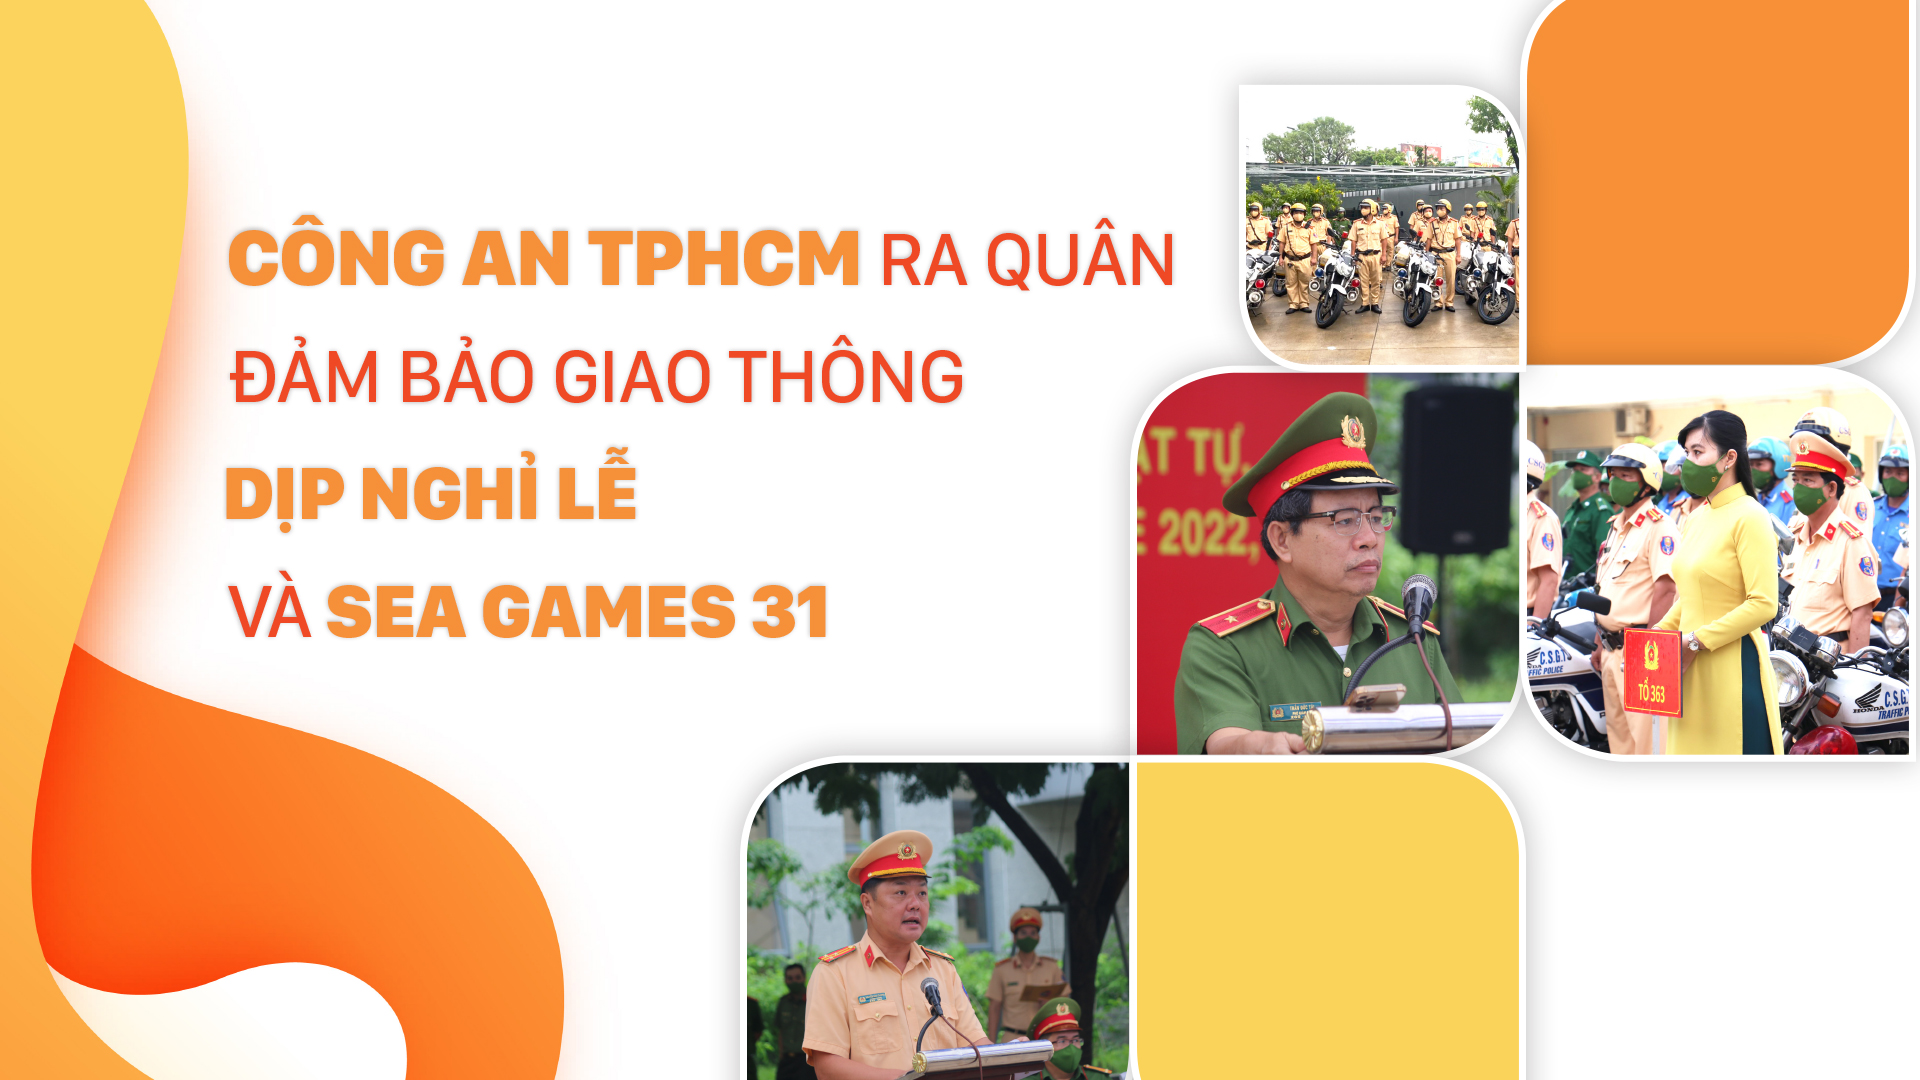 Công an TPHCM ra quân đảm bảo giao thông dịp nghỉ lễ và SEA Games 31